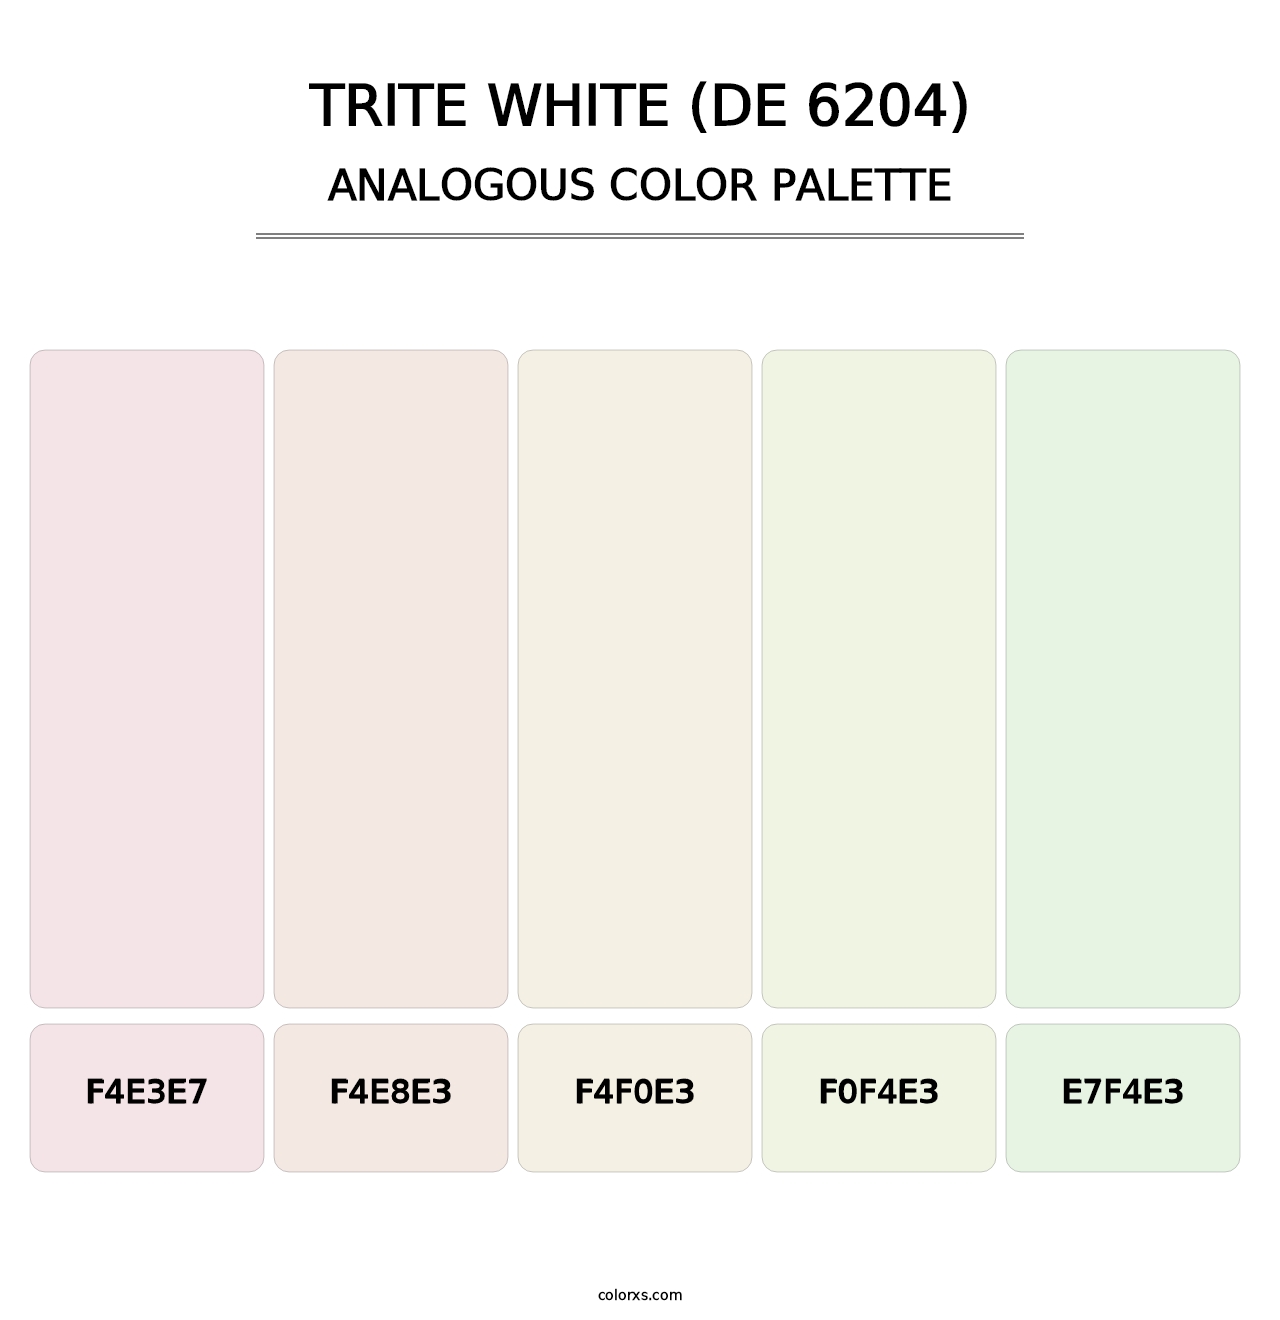 Trite White (DE 6204) - Analogous Color Palette